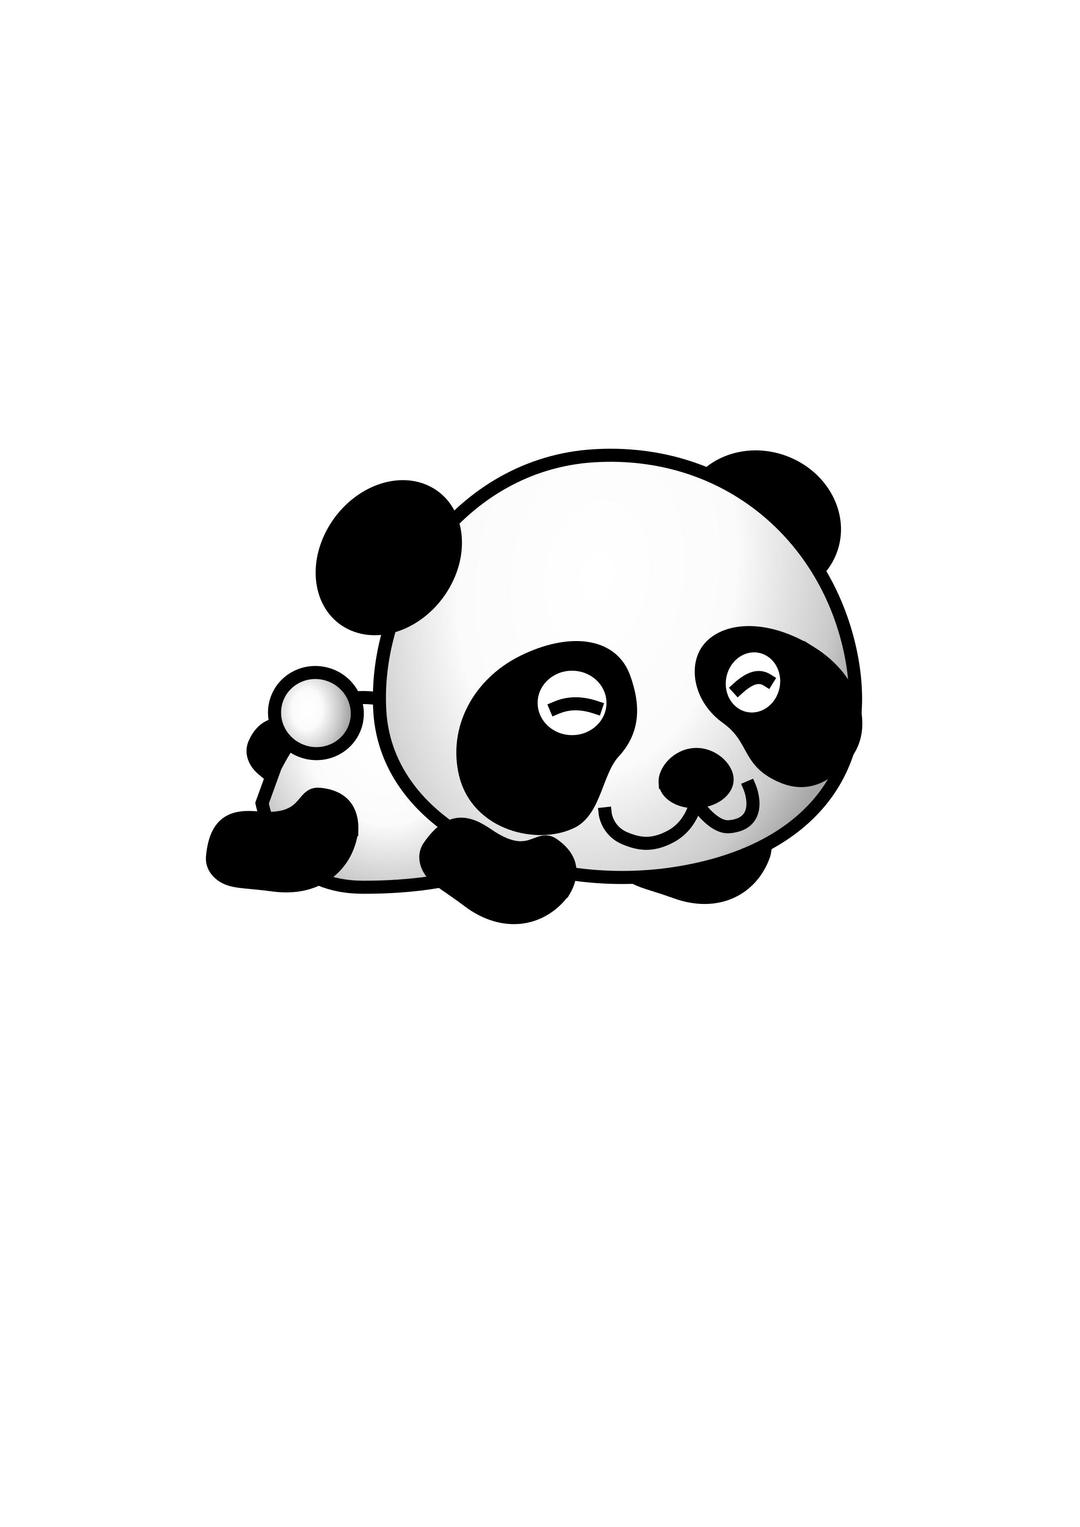 panda01 png transparent